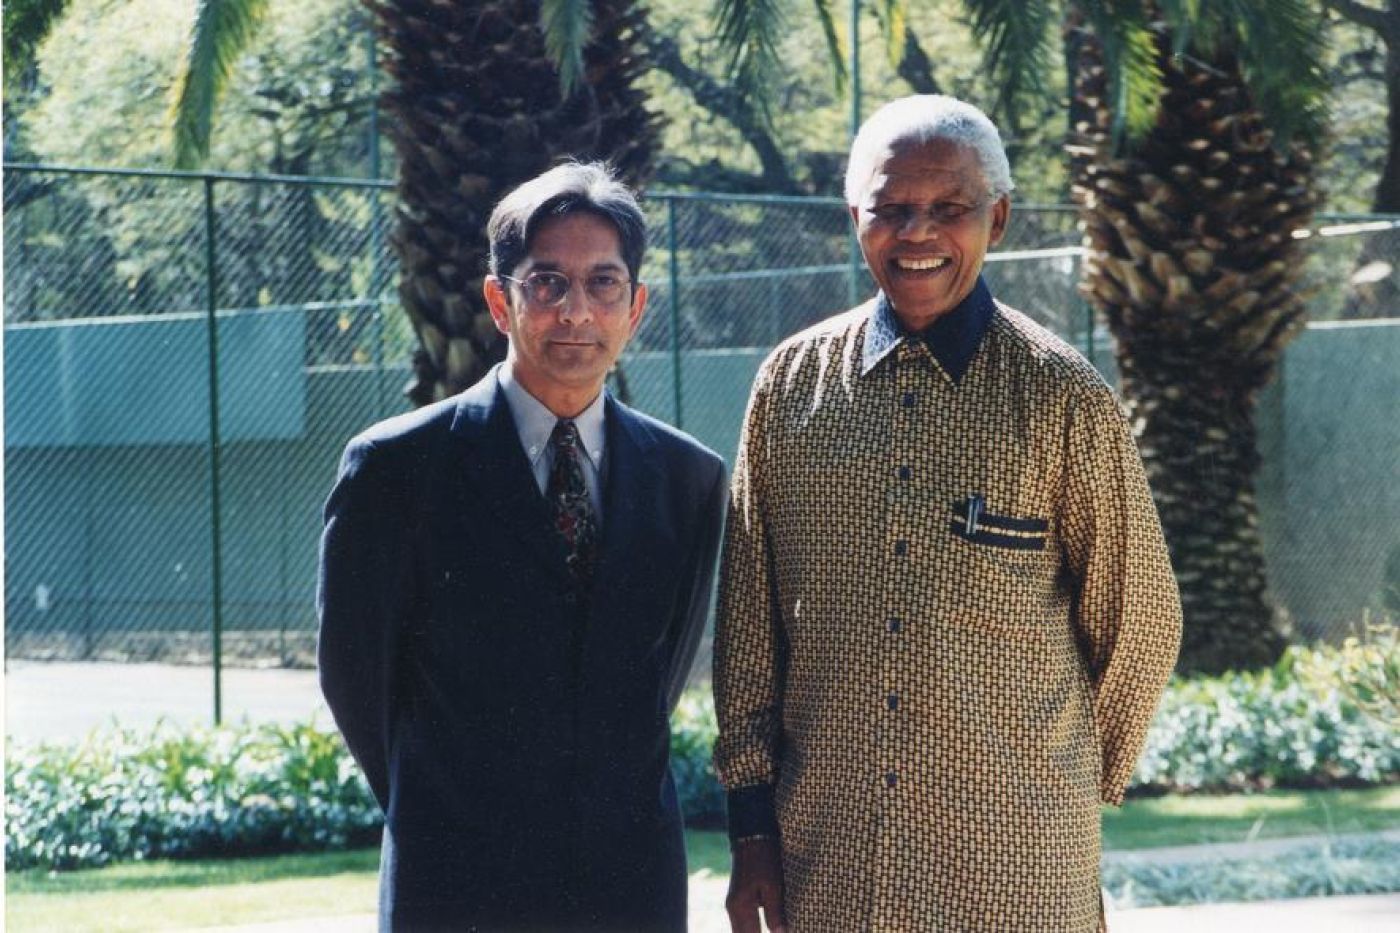 Achmat Dangor and Nelson Mandela